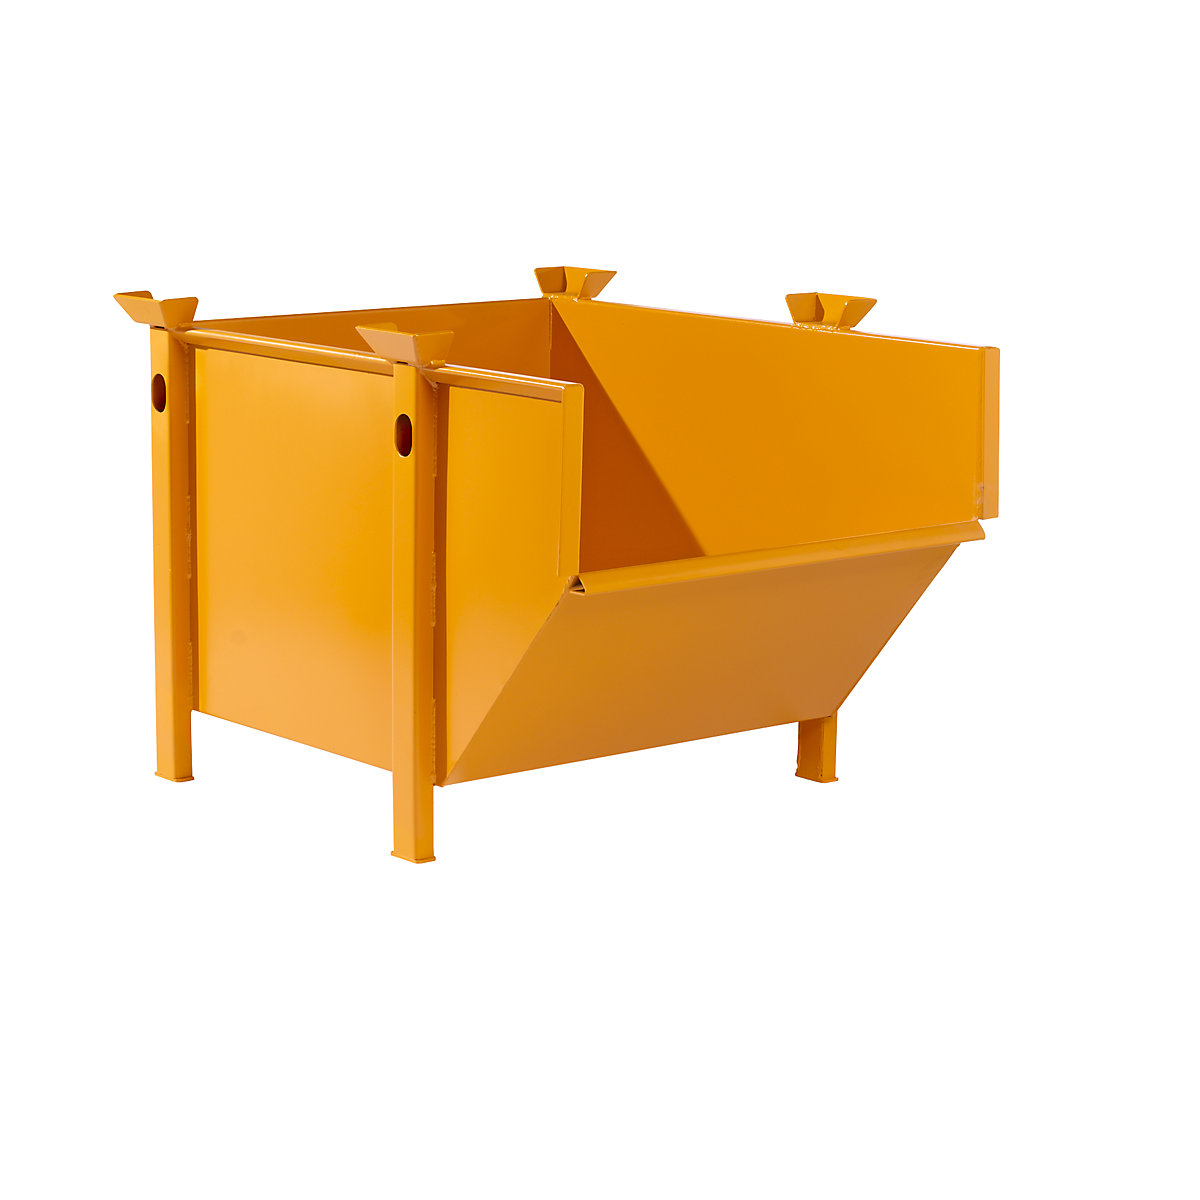 Contenitore in lamiera d'acciaio – eurokraft pro, capacità 0,5 m³, senza sponda ribaltabile, arancione-8